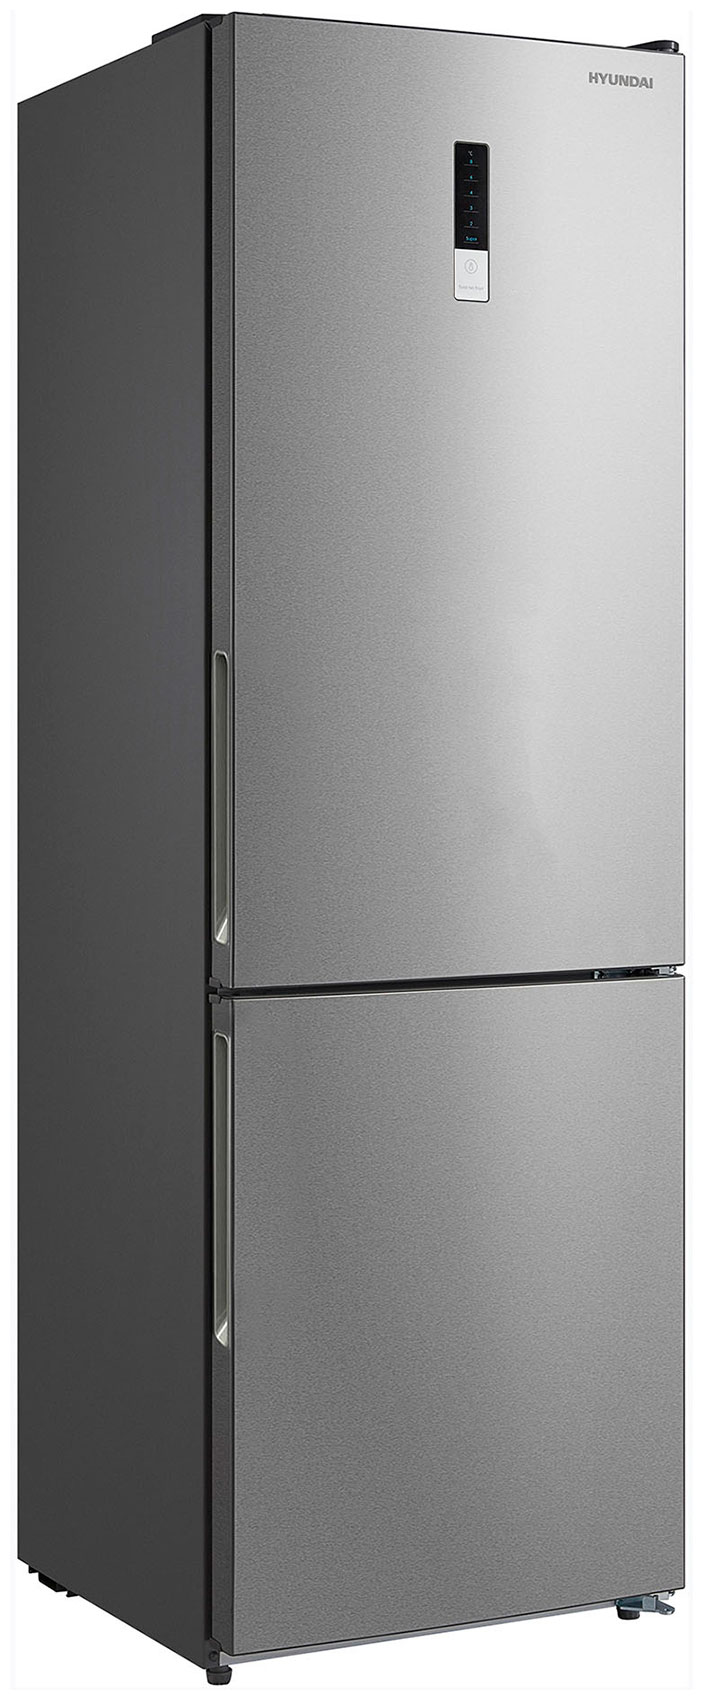 Двухкамерный холодильник Hyundai CC3095FIX нержавеющая сталь двухкамерный холодильник hyundai cc3595fix нержавеющая сталь